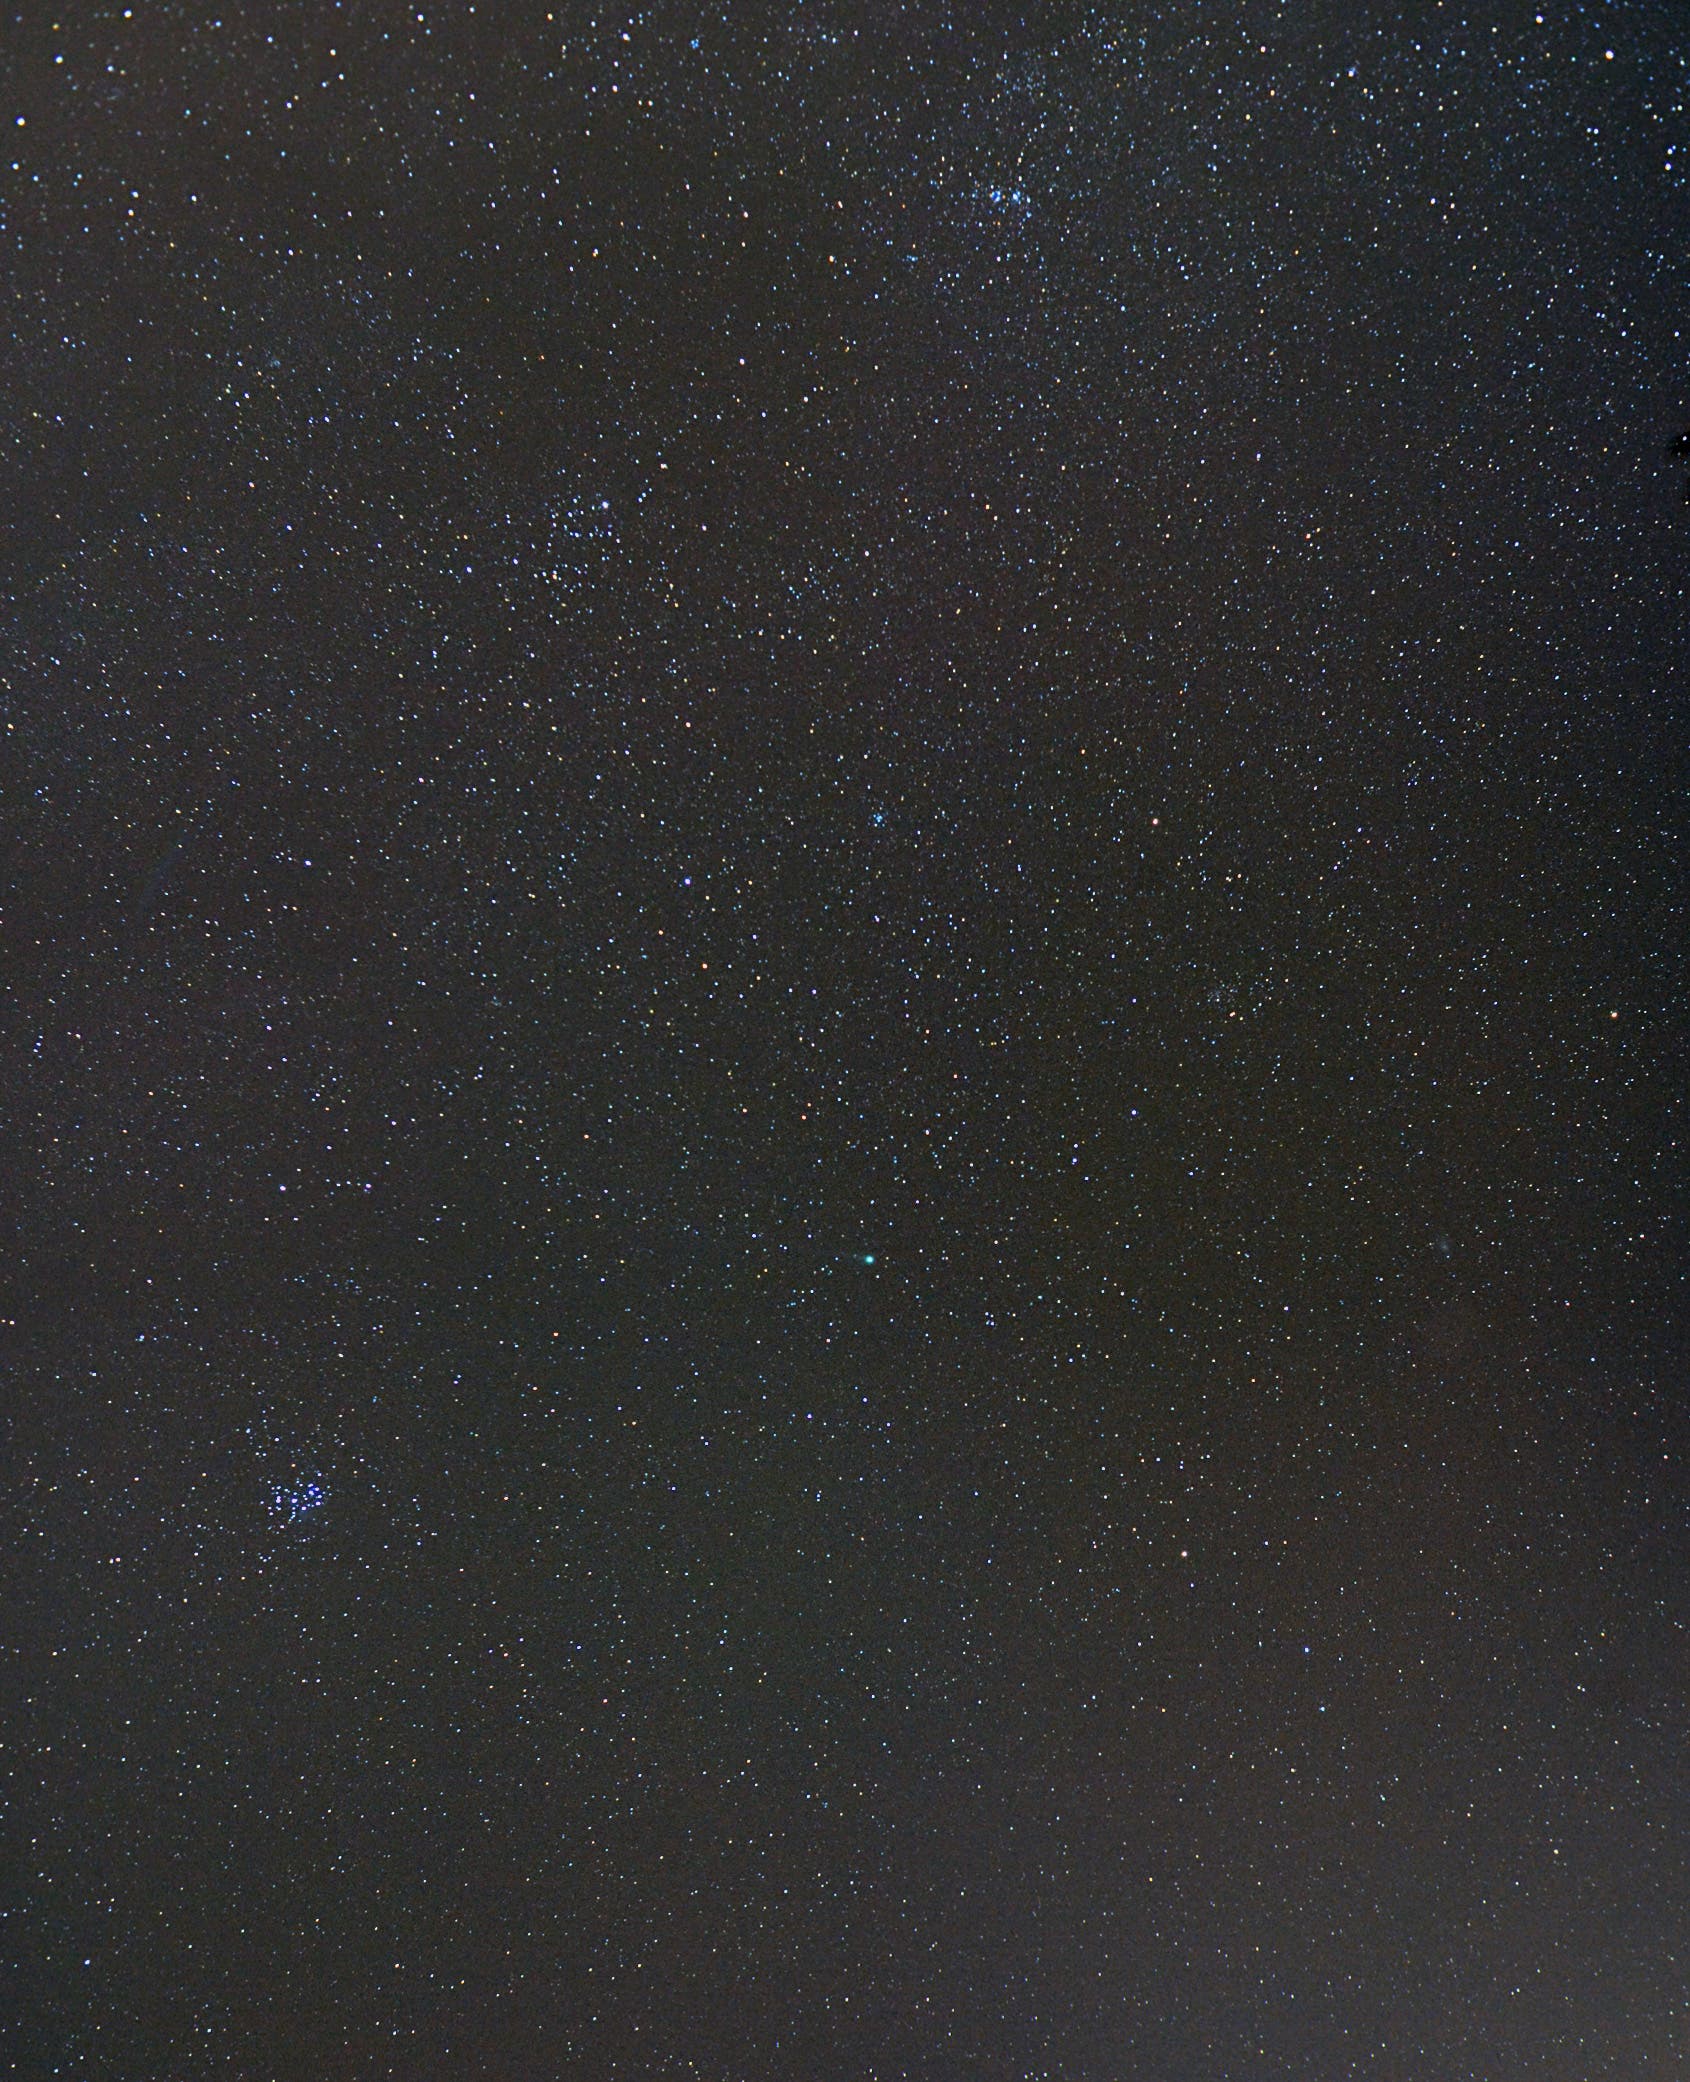 Komet Lovejoy am 24. Januar 2015